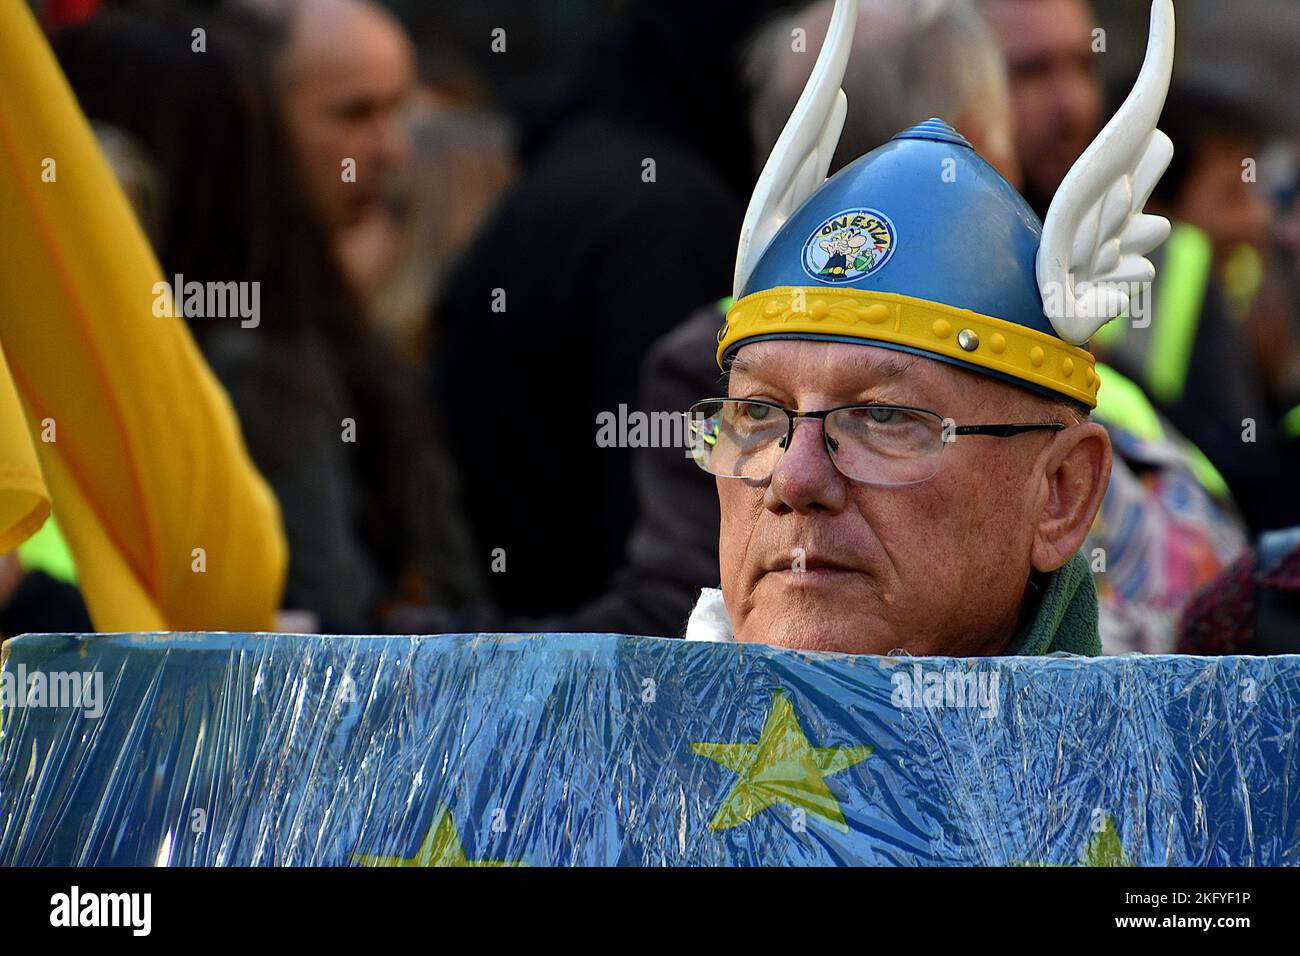 Un manifestant est vu porter un casque gaulois pendant la démonstration. Les "gilets jaunes" ont manifesté dans toute la France pour célébrer le quatrième anniversaire de leur mouvement né à l'automne 2018 contre la politique d'Emmanuel Macron et contre le coût élevé de la vie. Banque D'Images